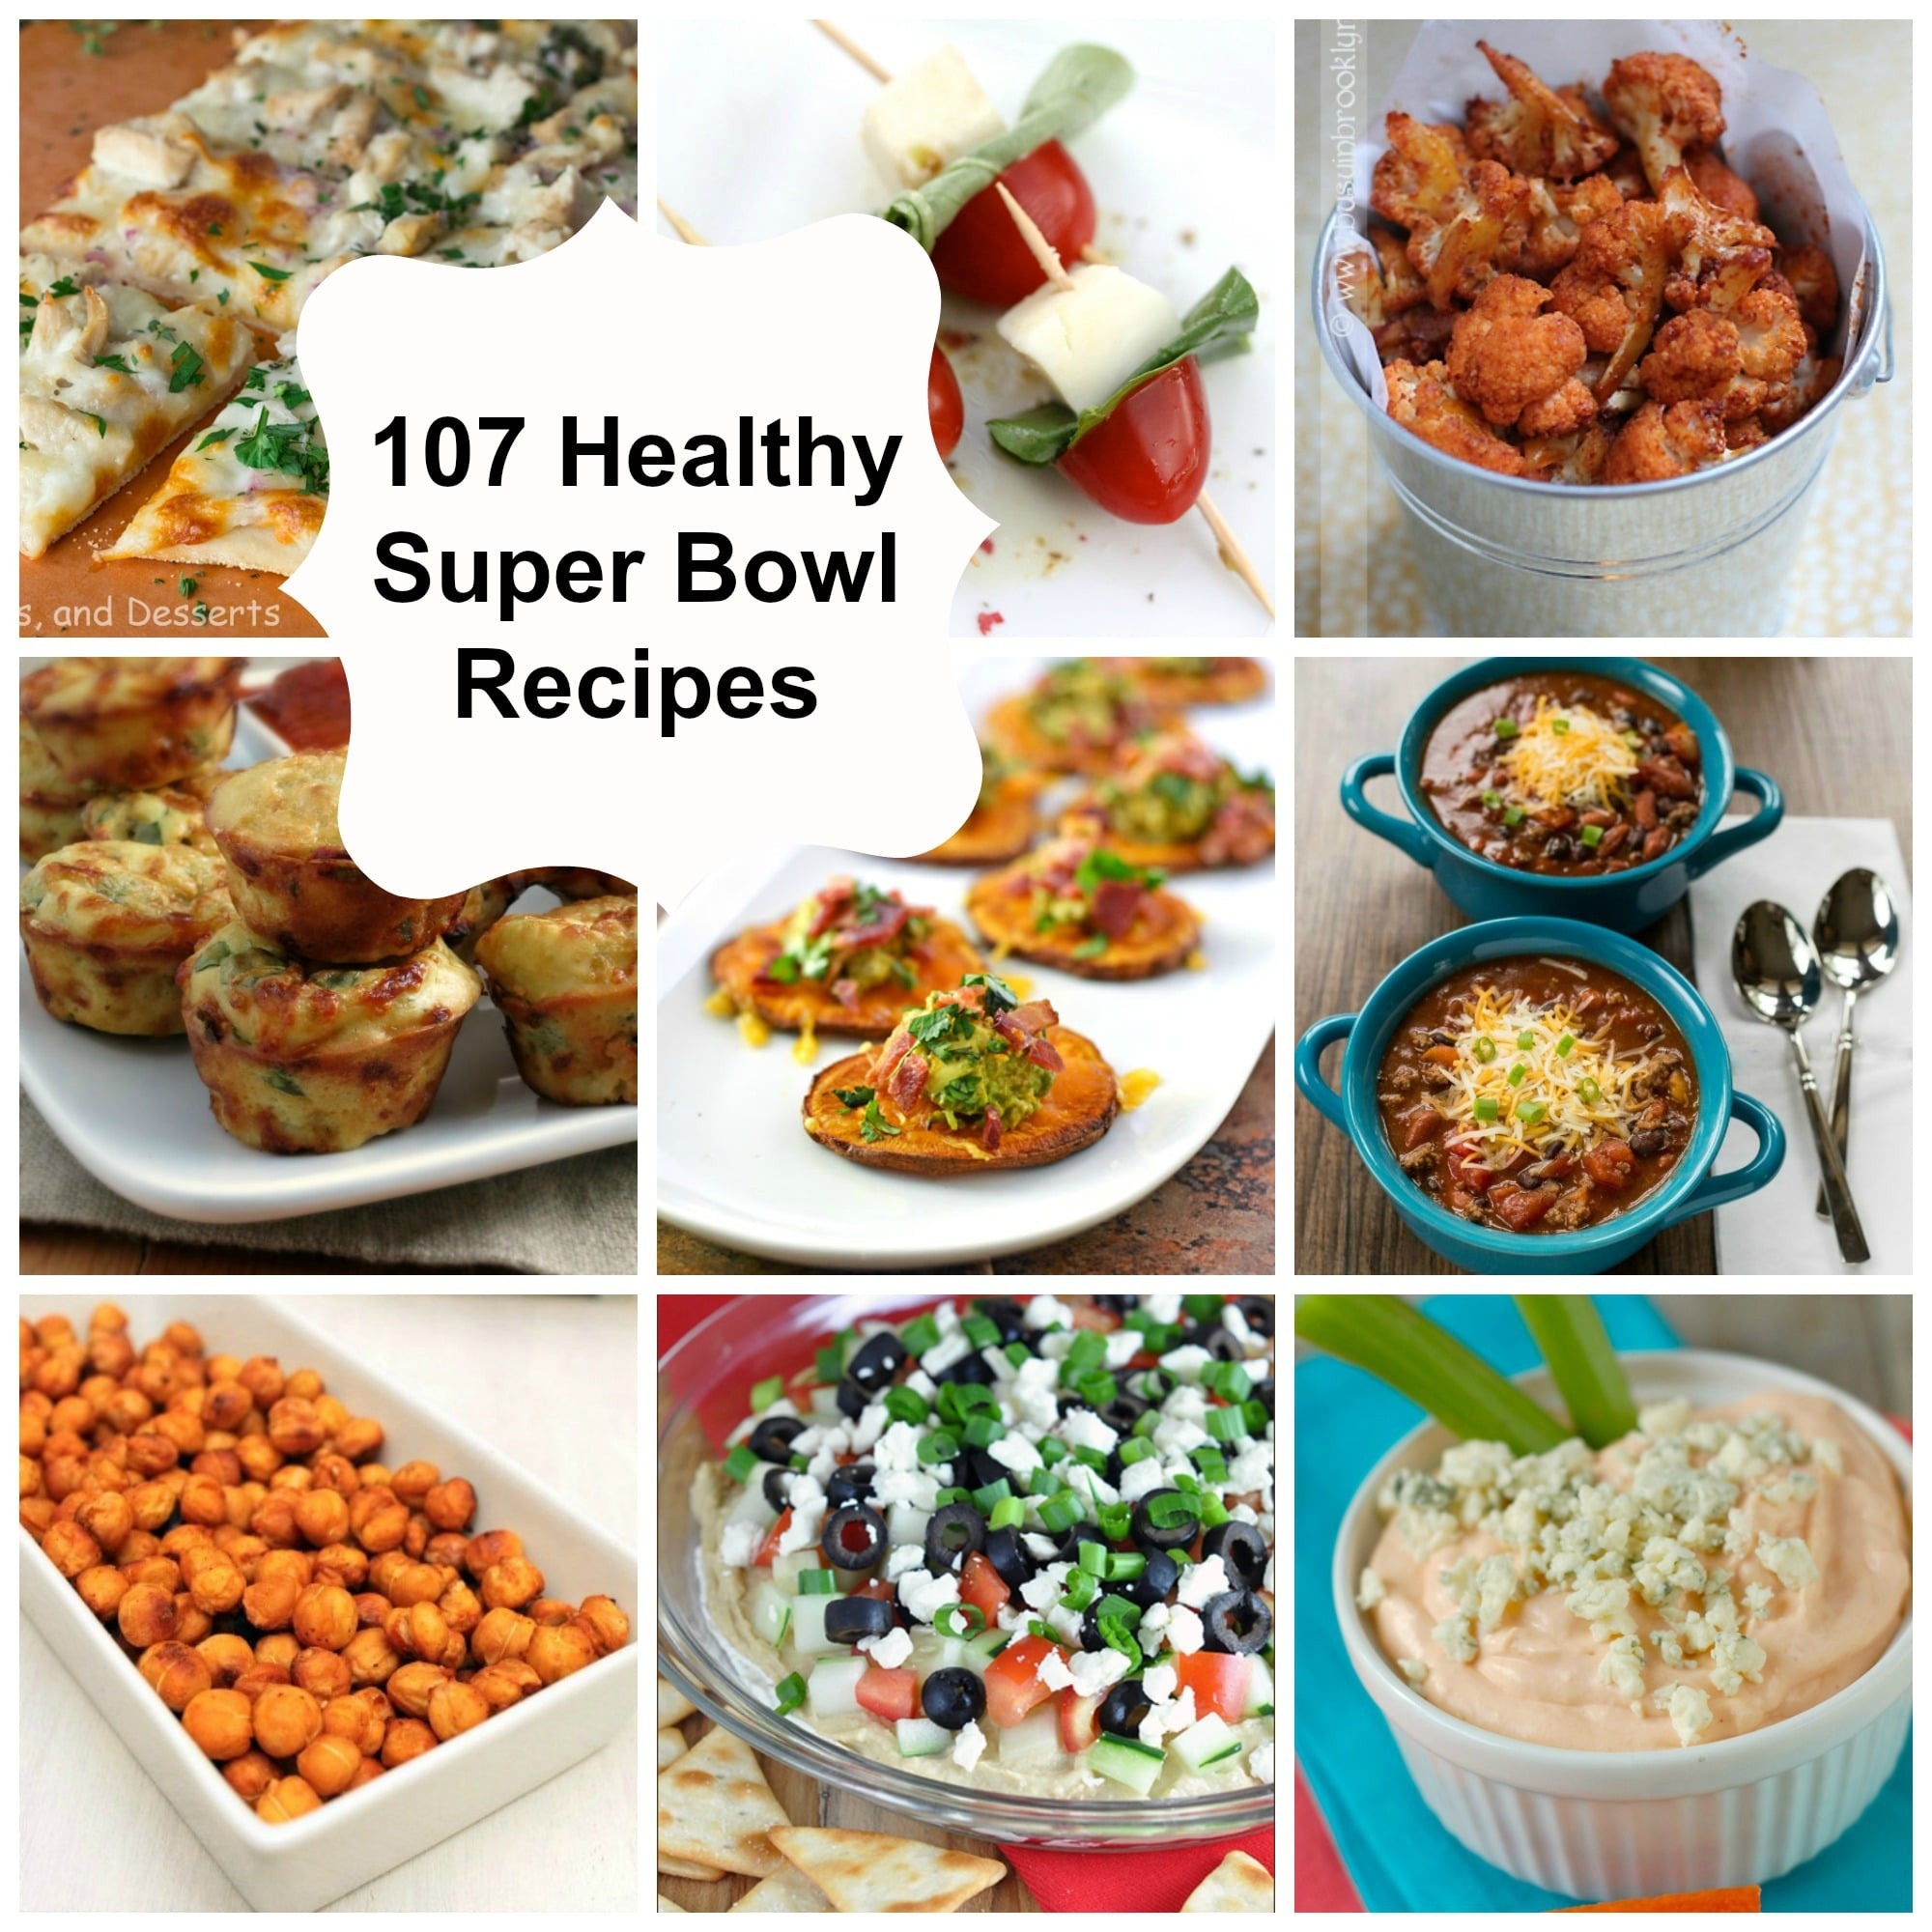 Super Bowl Dishes Recipes
 107 Healthy Super Bowl Recipes A Cedar Spoon